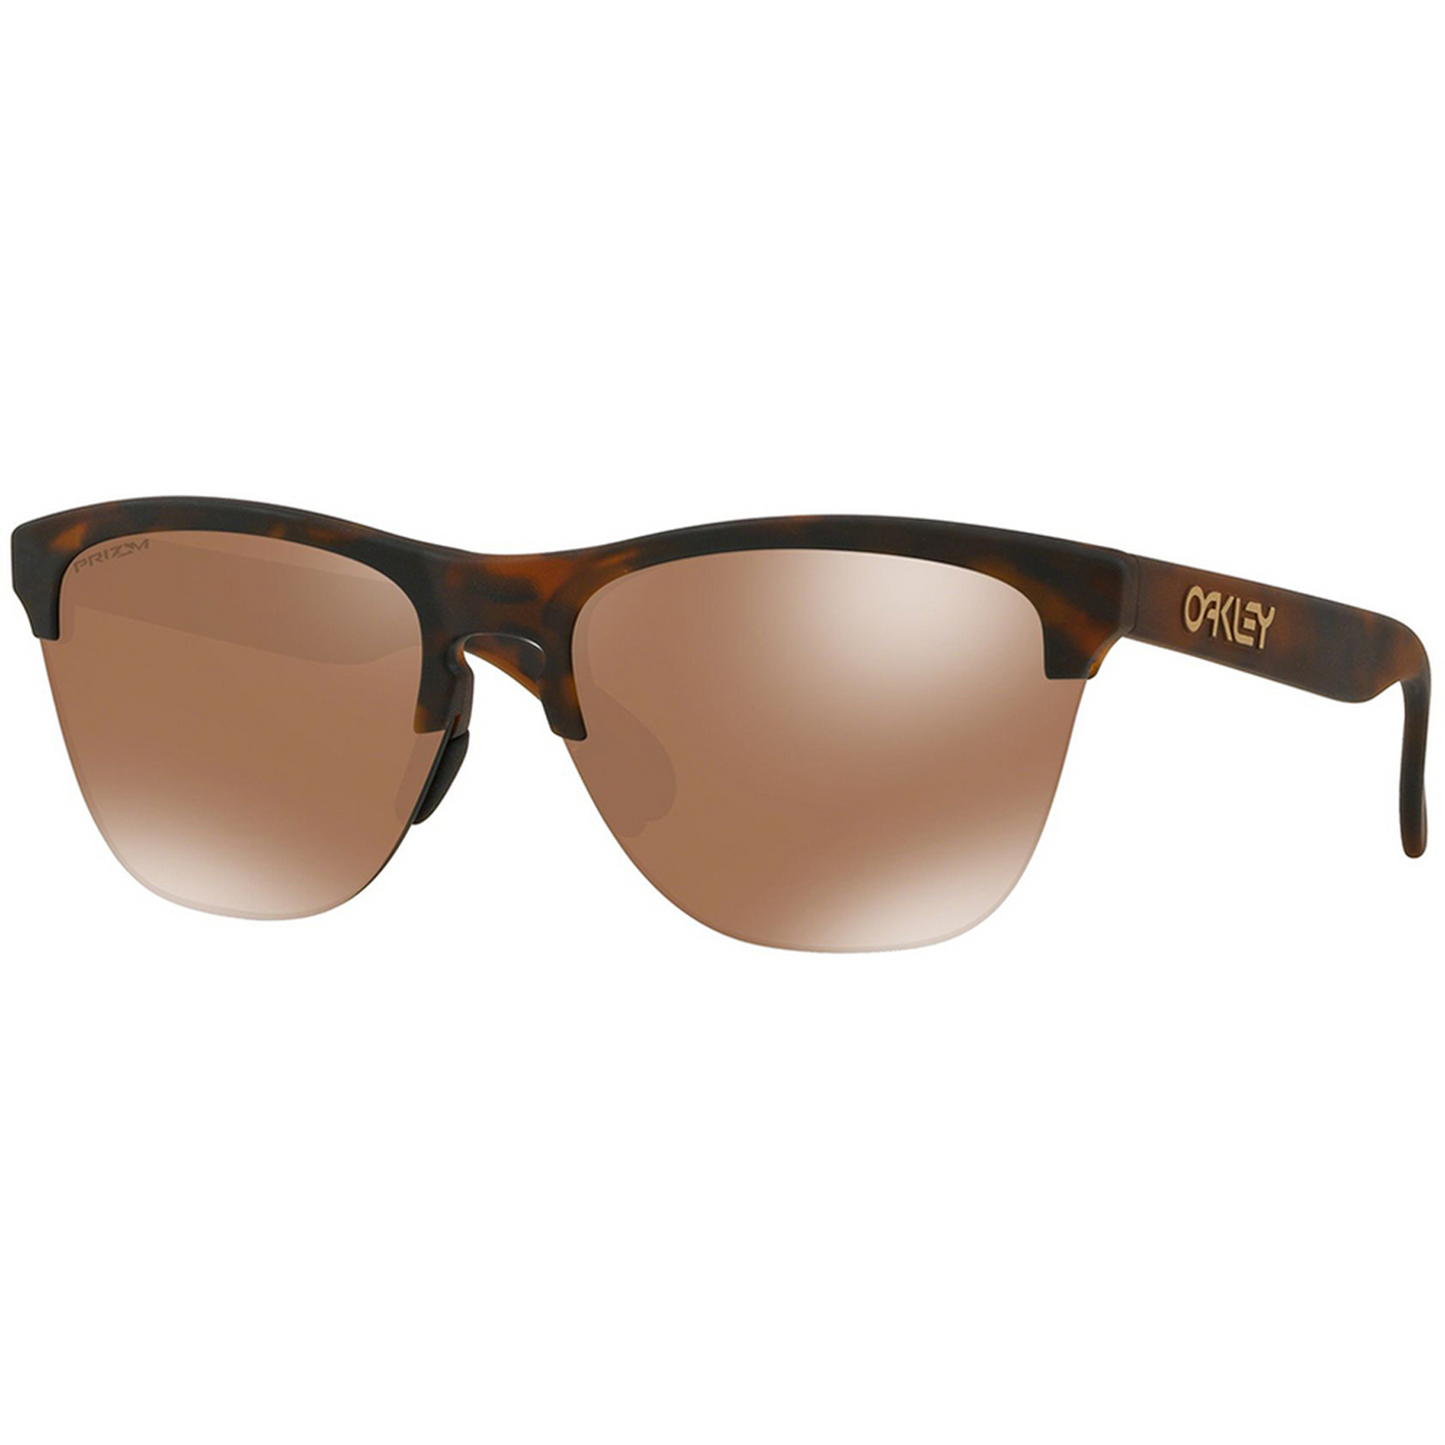 Oakley Frogskins Lite Sunglasses (Matt Brown Tortoise) Prizm Tungsten Lens